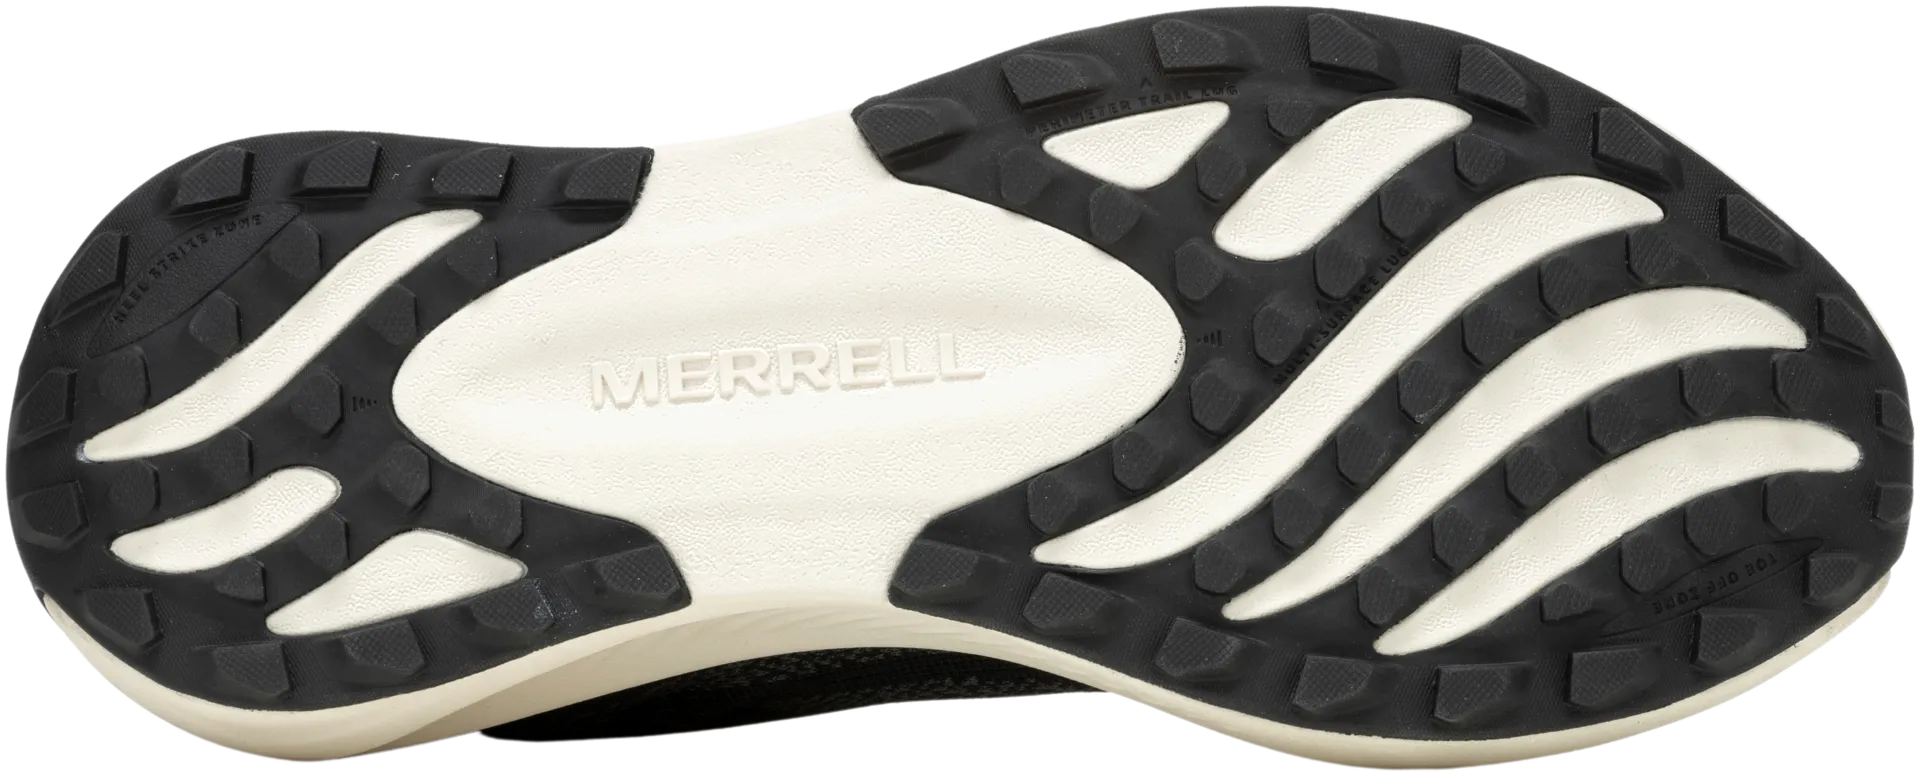 Merrell miesten juoksujalkine Morphlite black/white - Black/white - 5